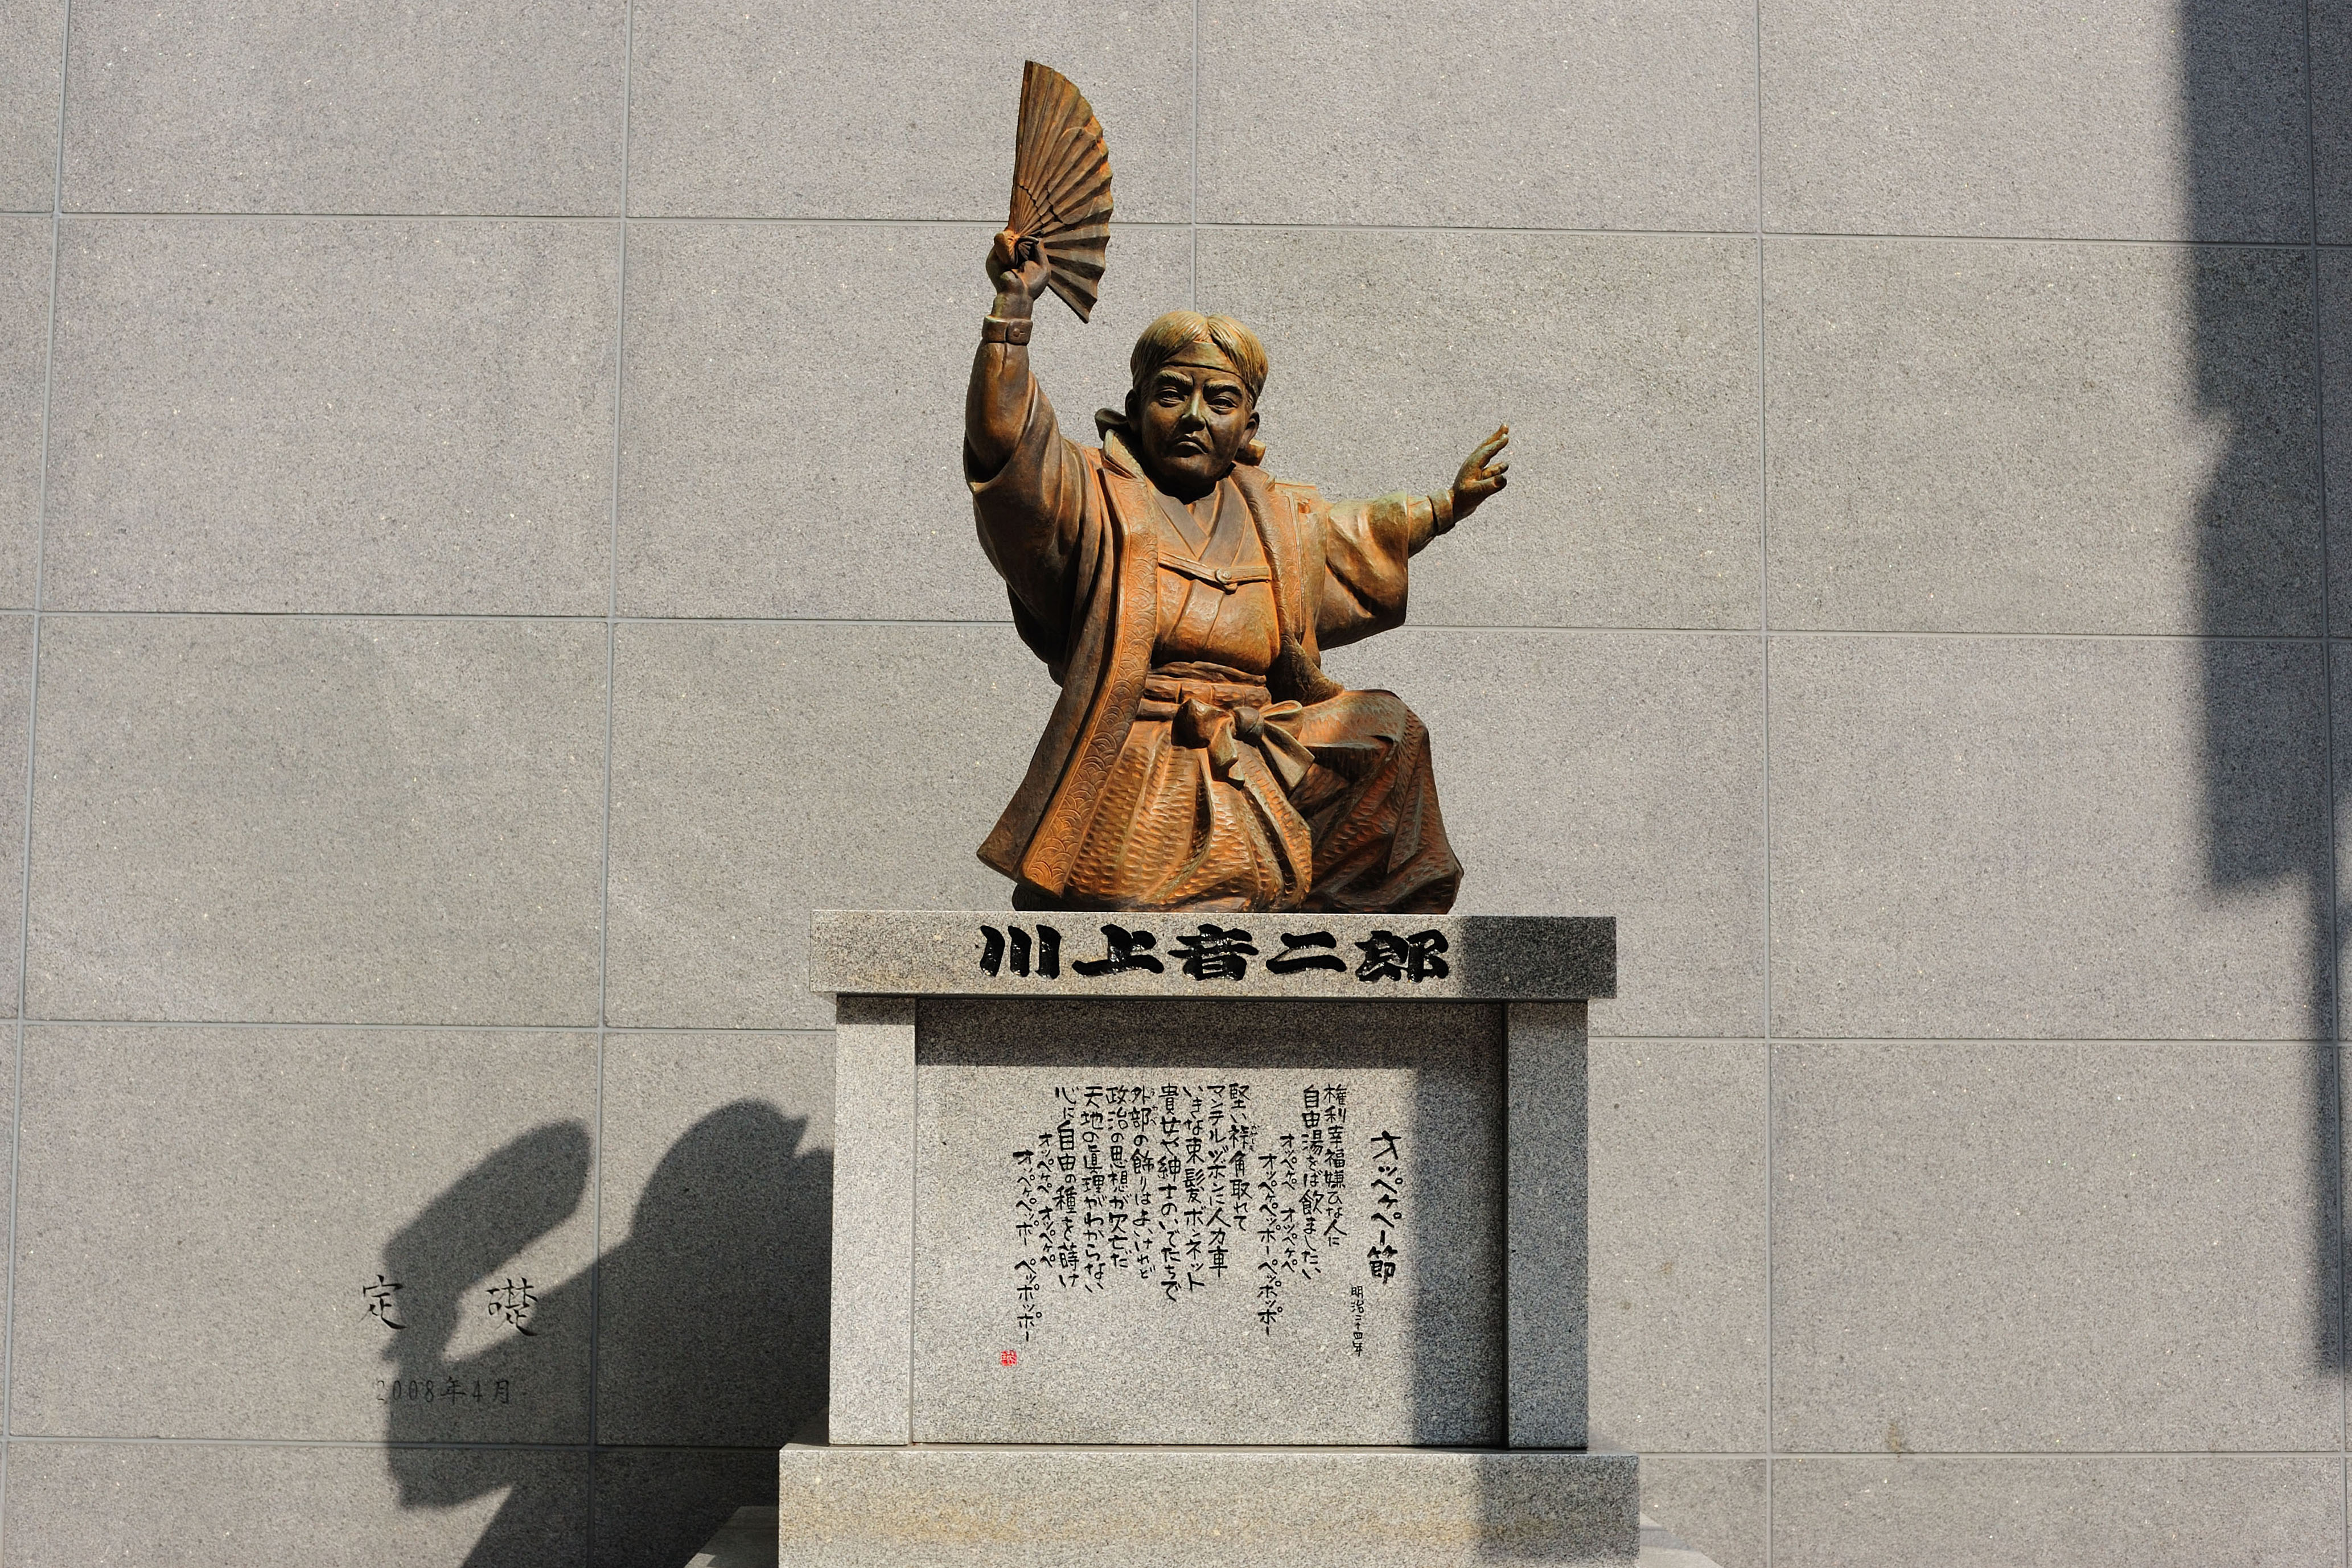 川端商店街入口にある川上音二郎像(2009)の画像